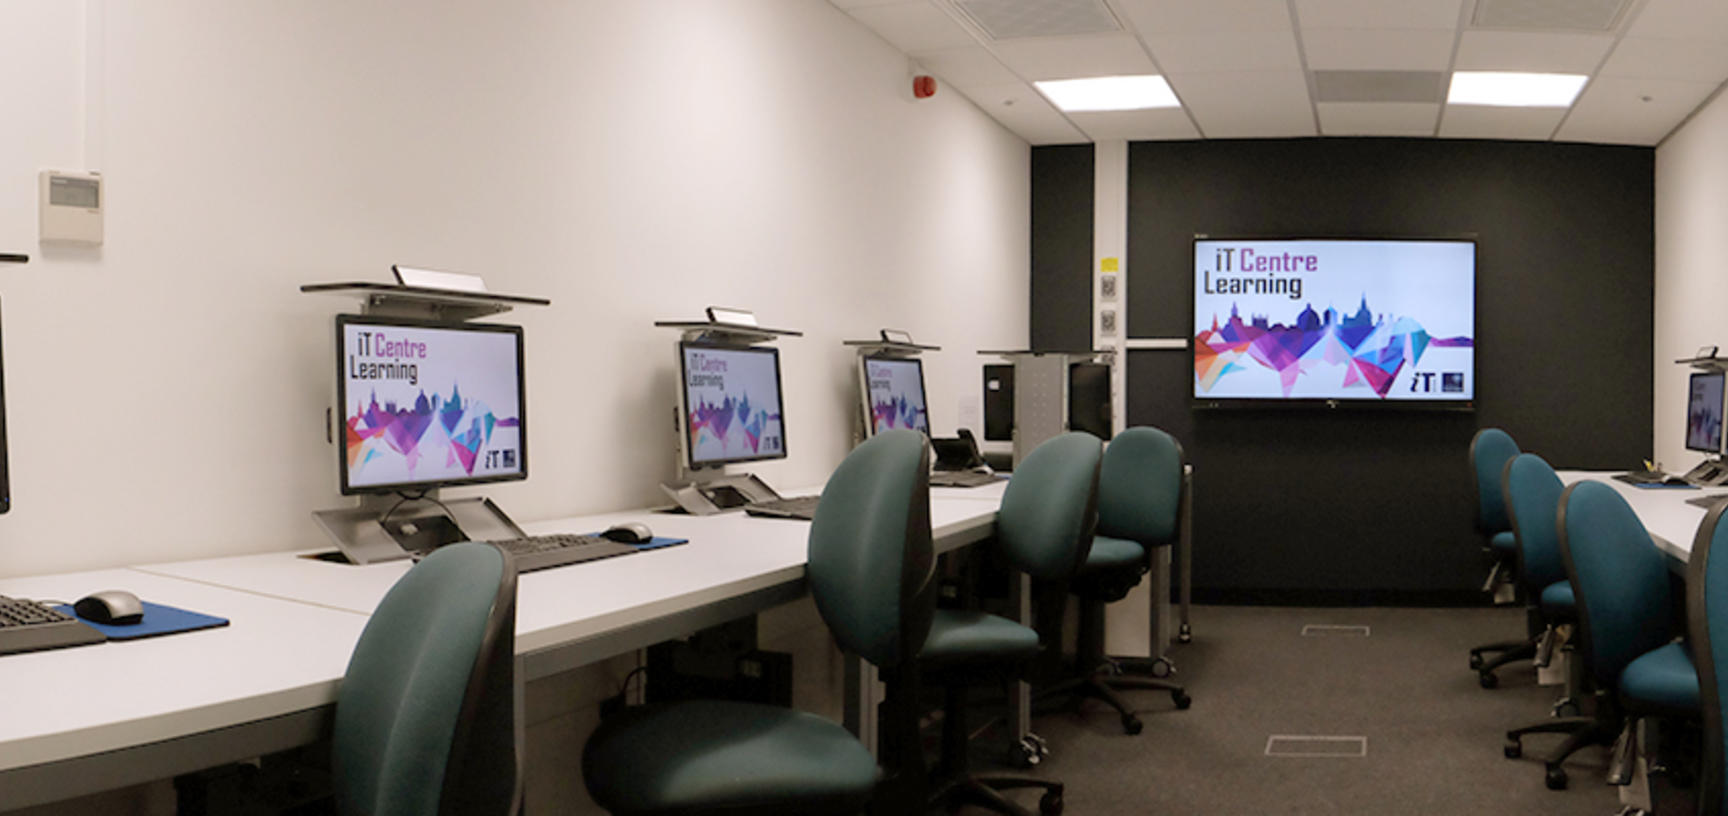 IT Learning Centre Ock room